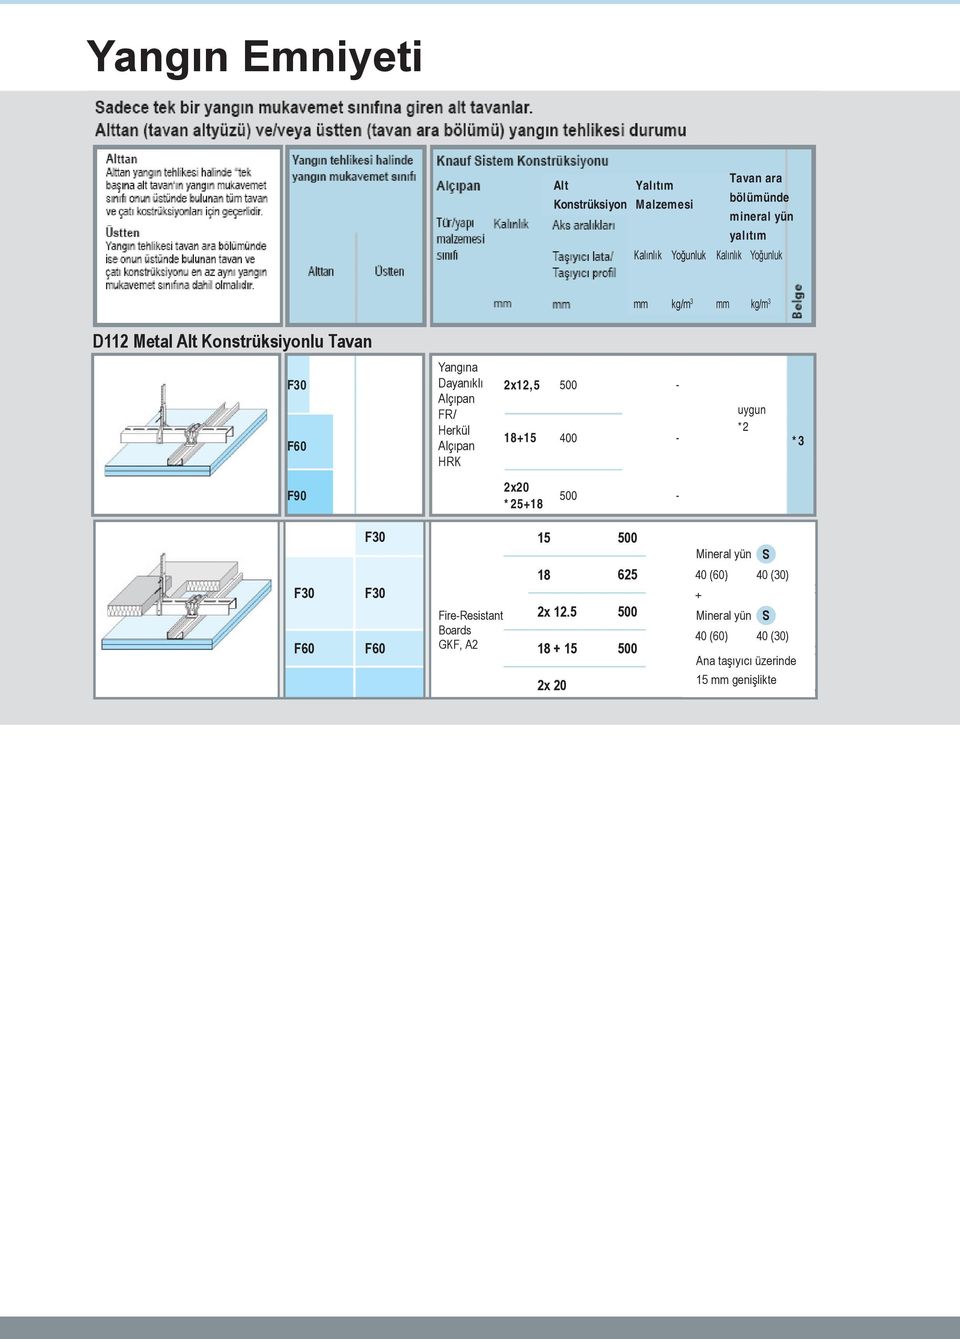 detay kataloğu sayfa 4 FireResistant Boards KF, A2 18 2x 12.